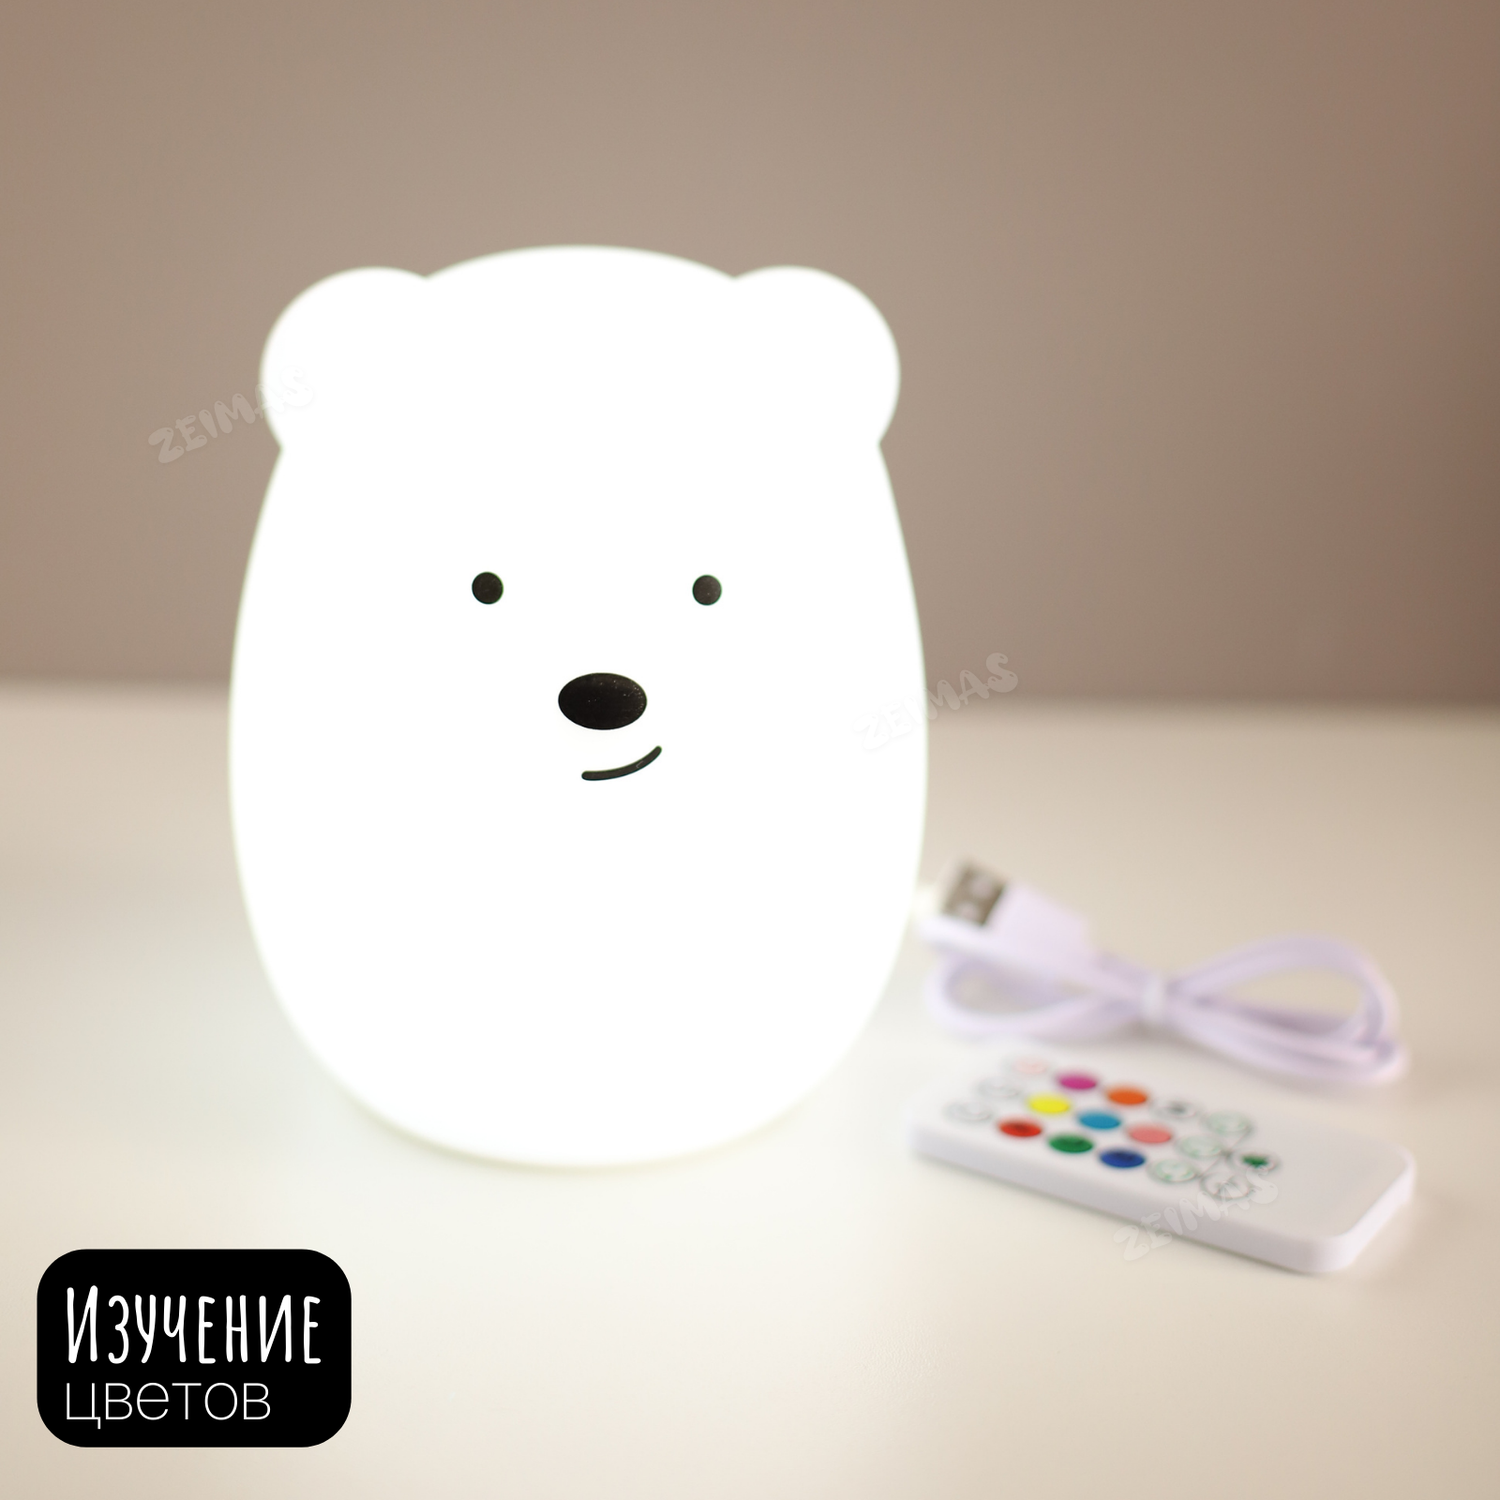 Ночник детский силиконовый Zeimas Медведь светильник развивающая тактильная игрушка - фото 13